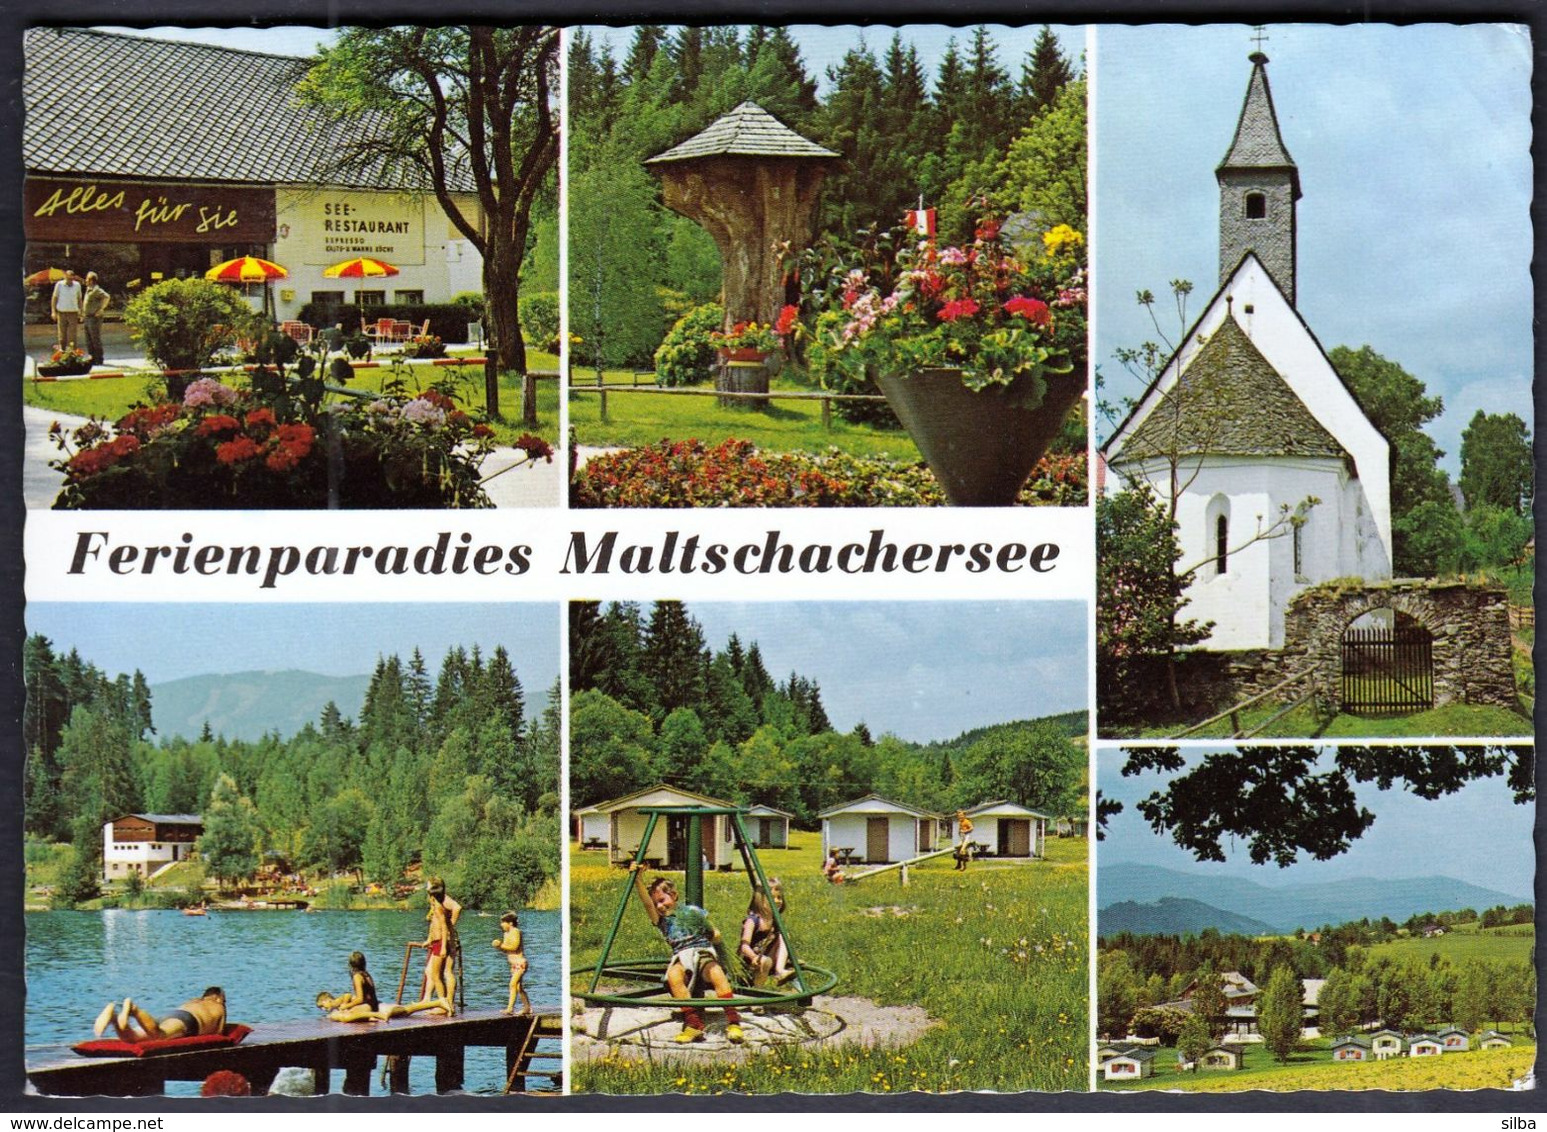 Austria Ferienparadies Maltschachersee, Bei Feldkirchen In Kärnten / Lake, Camping, Restaurant, Church / Multi View - Feldkirchen In Kärnten